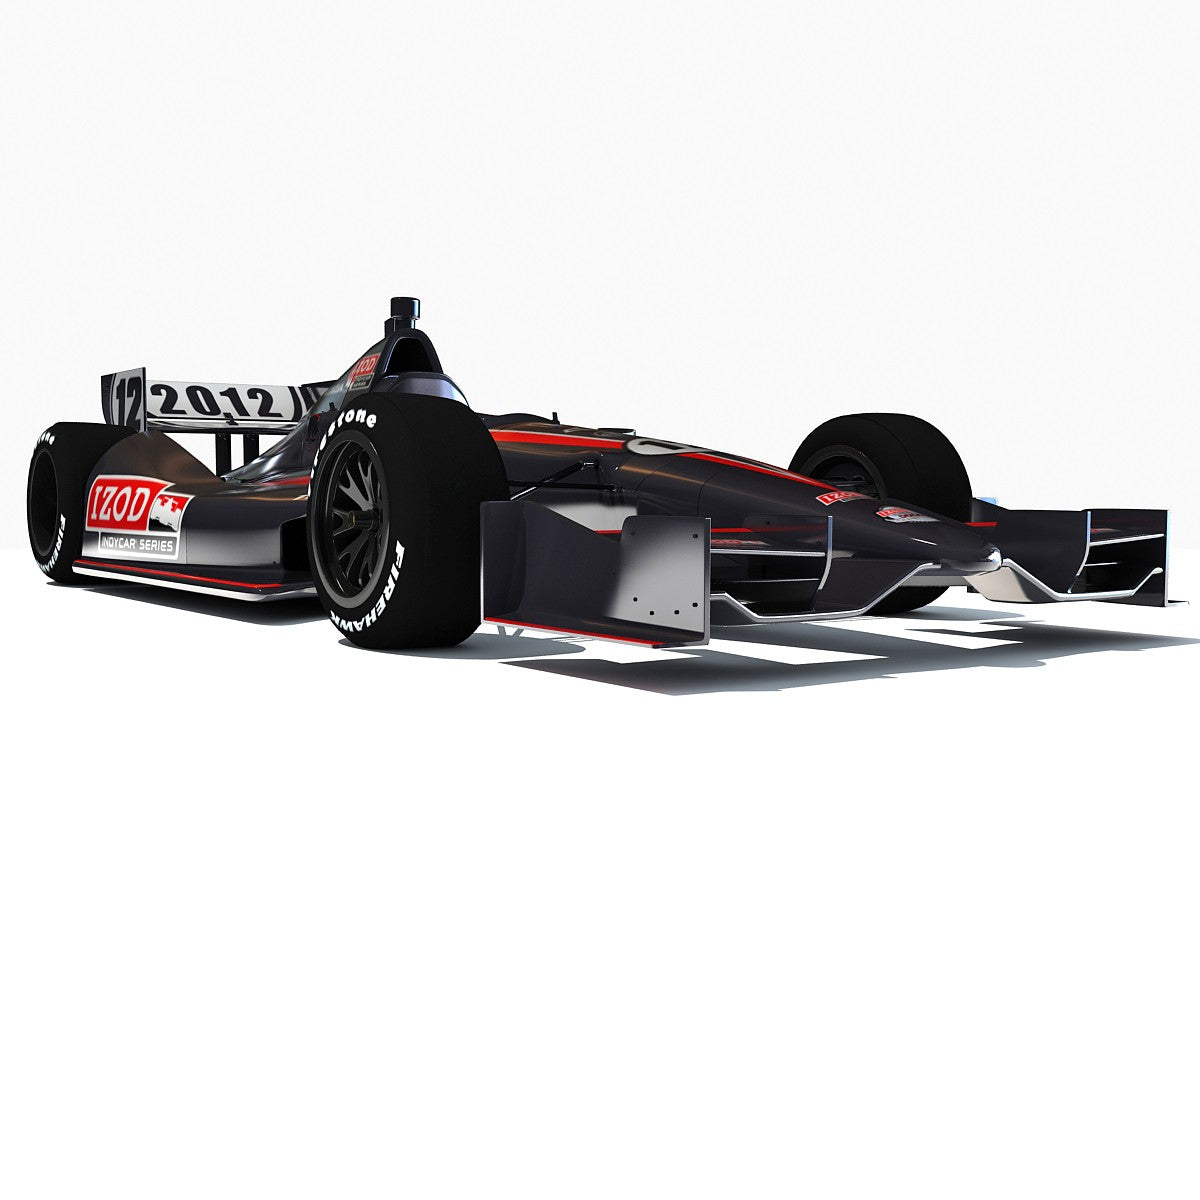 Izod Indycar Series 3D Models